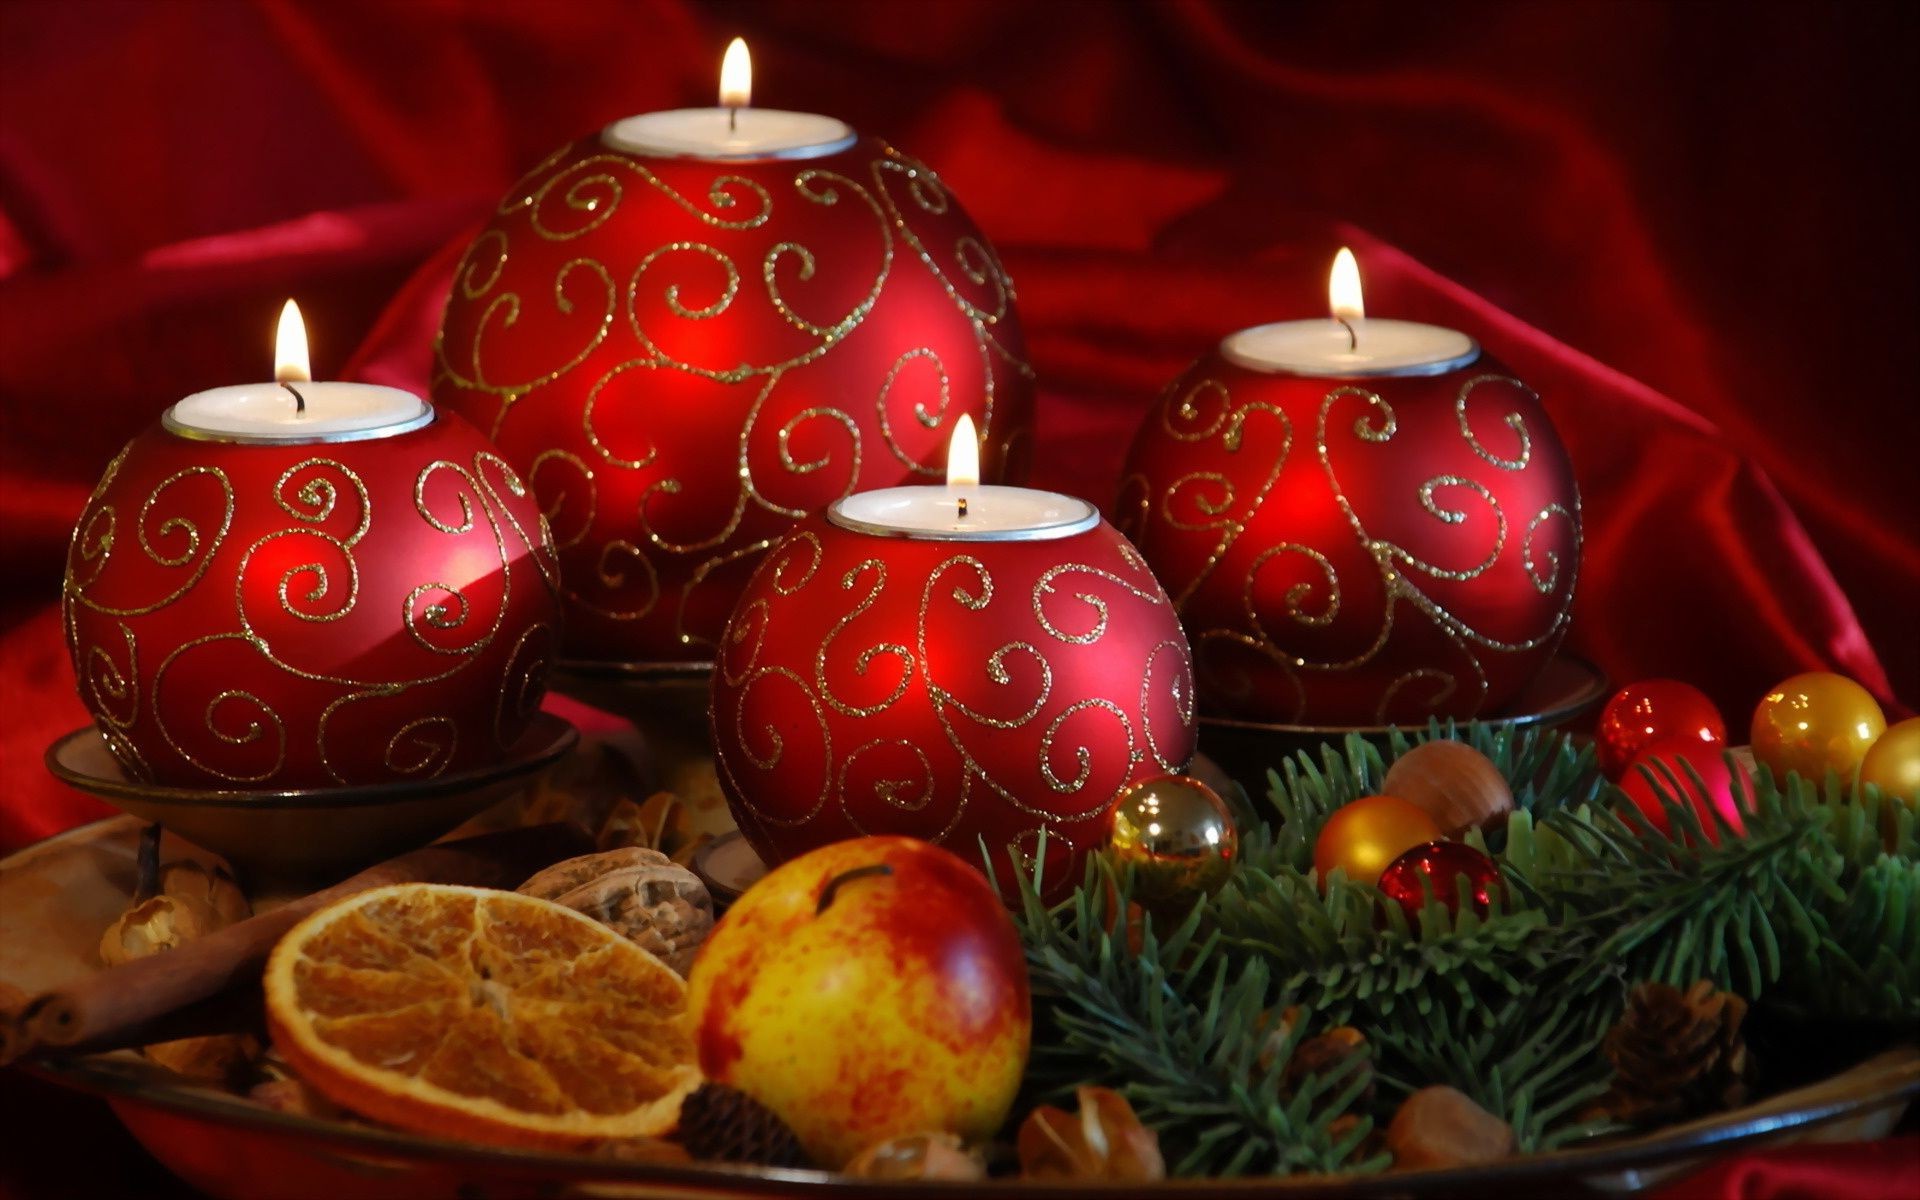 новый год рождество зима свеча праздник украшения свечи появлением светит мяч золото мерри свет витиеватый сезон браслет яркий нить традиционные сосна